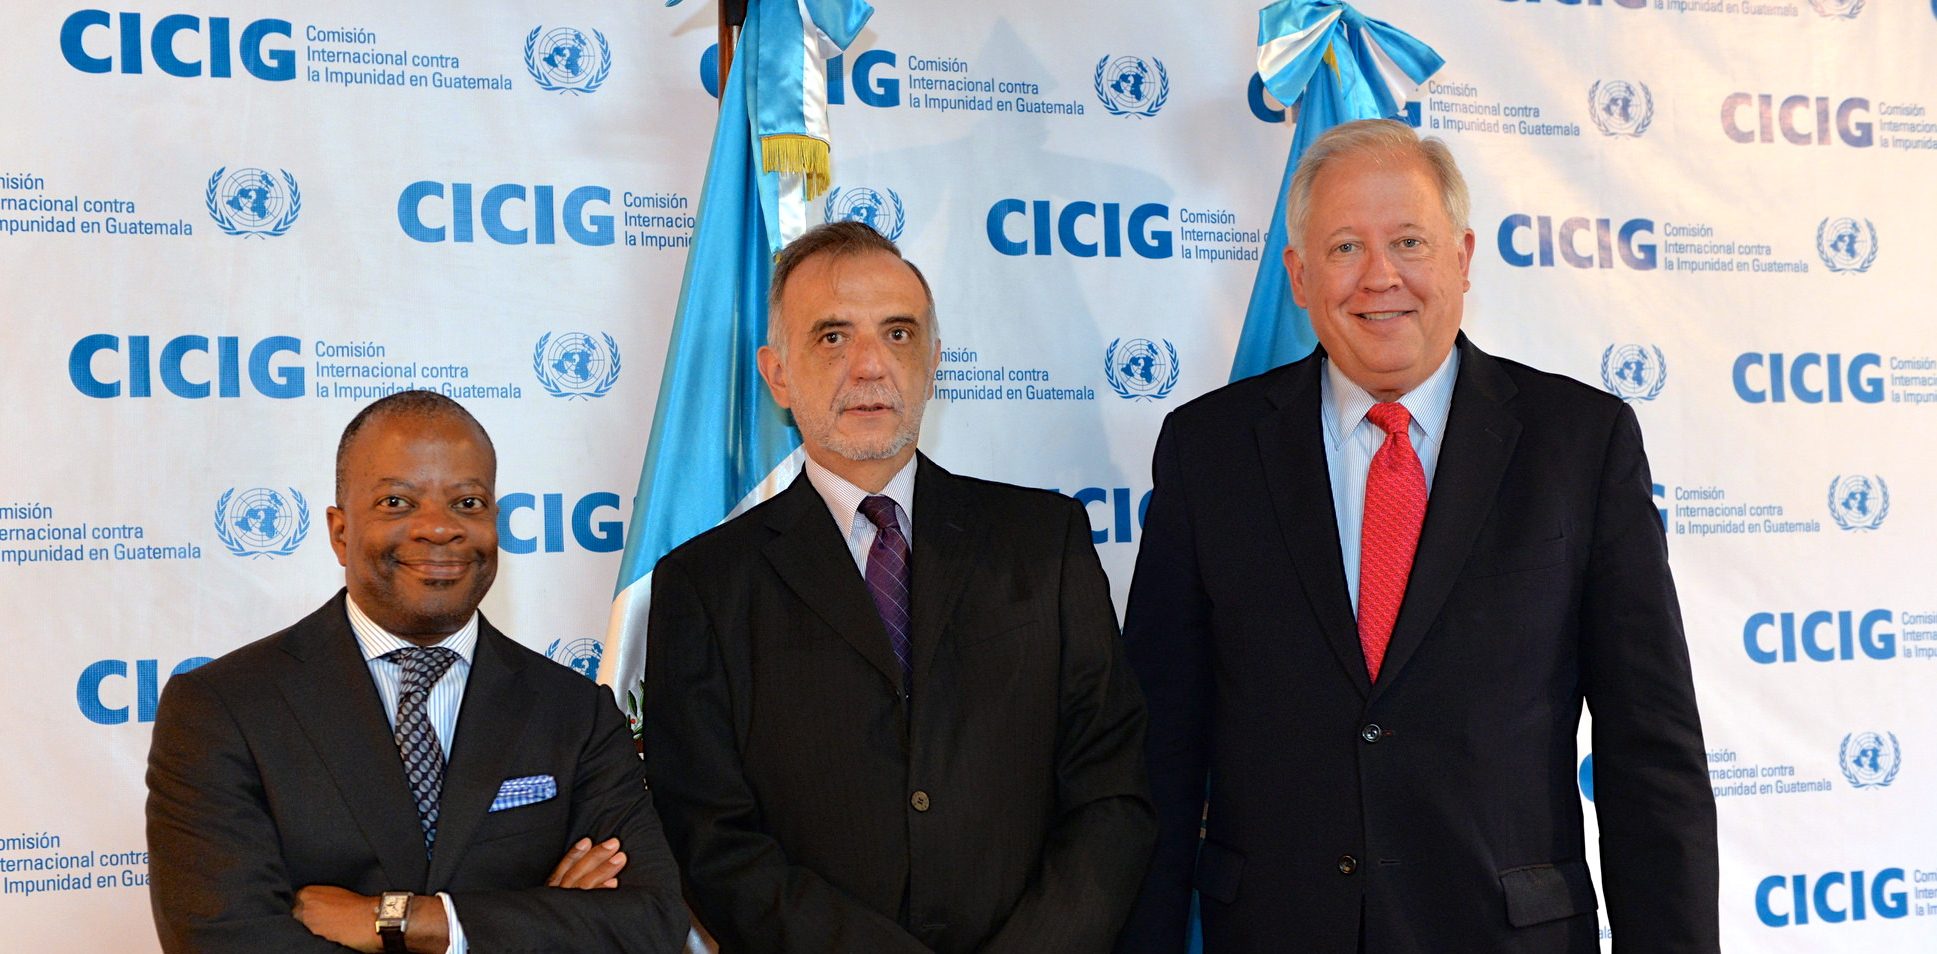 La CICIG, el organismo que persigue a los corruptos en Guatemala. Fotografía: Panampost